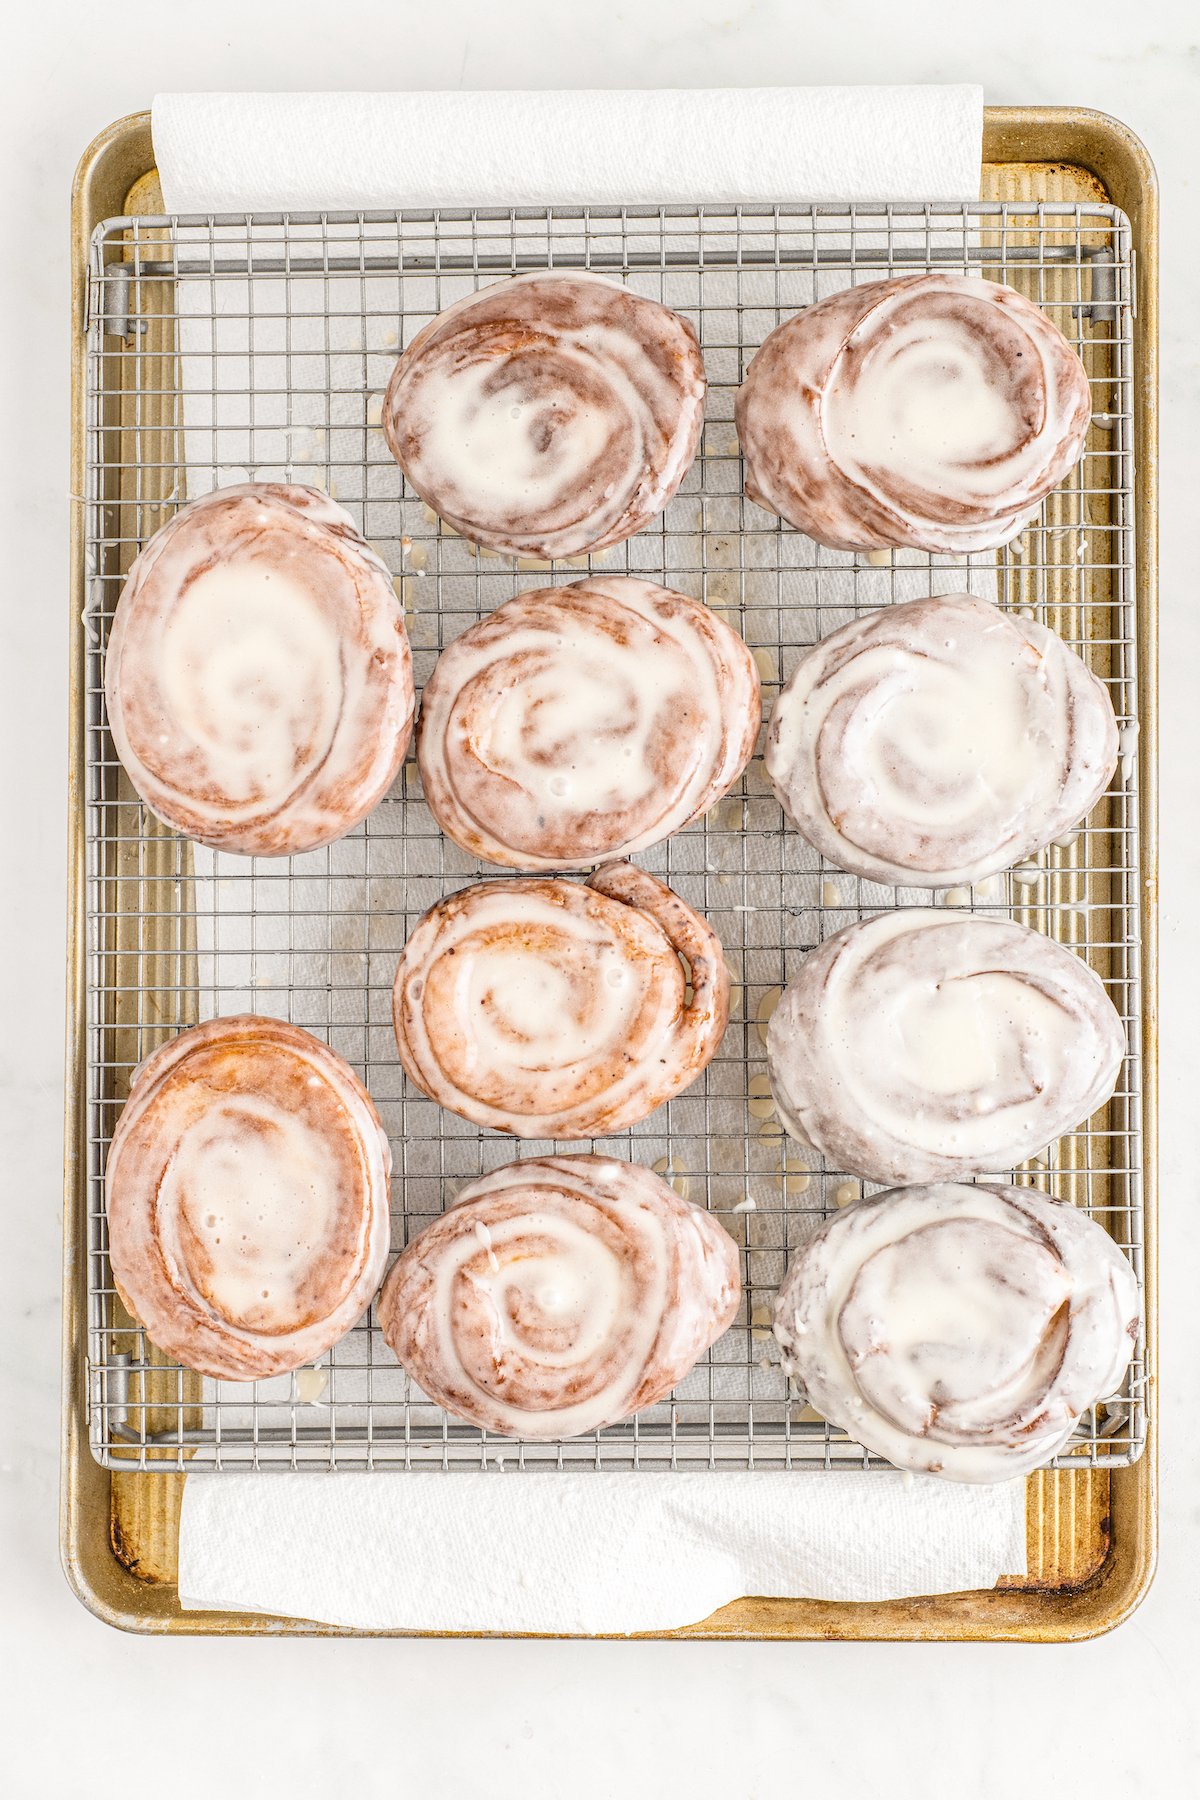 Glazed sweet rolls on a baking sheet.